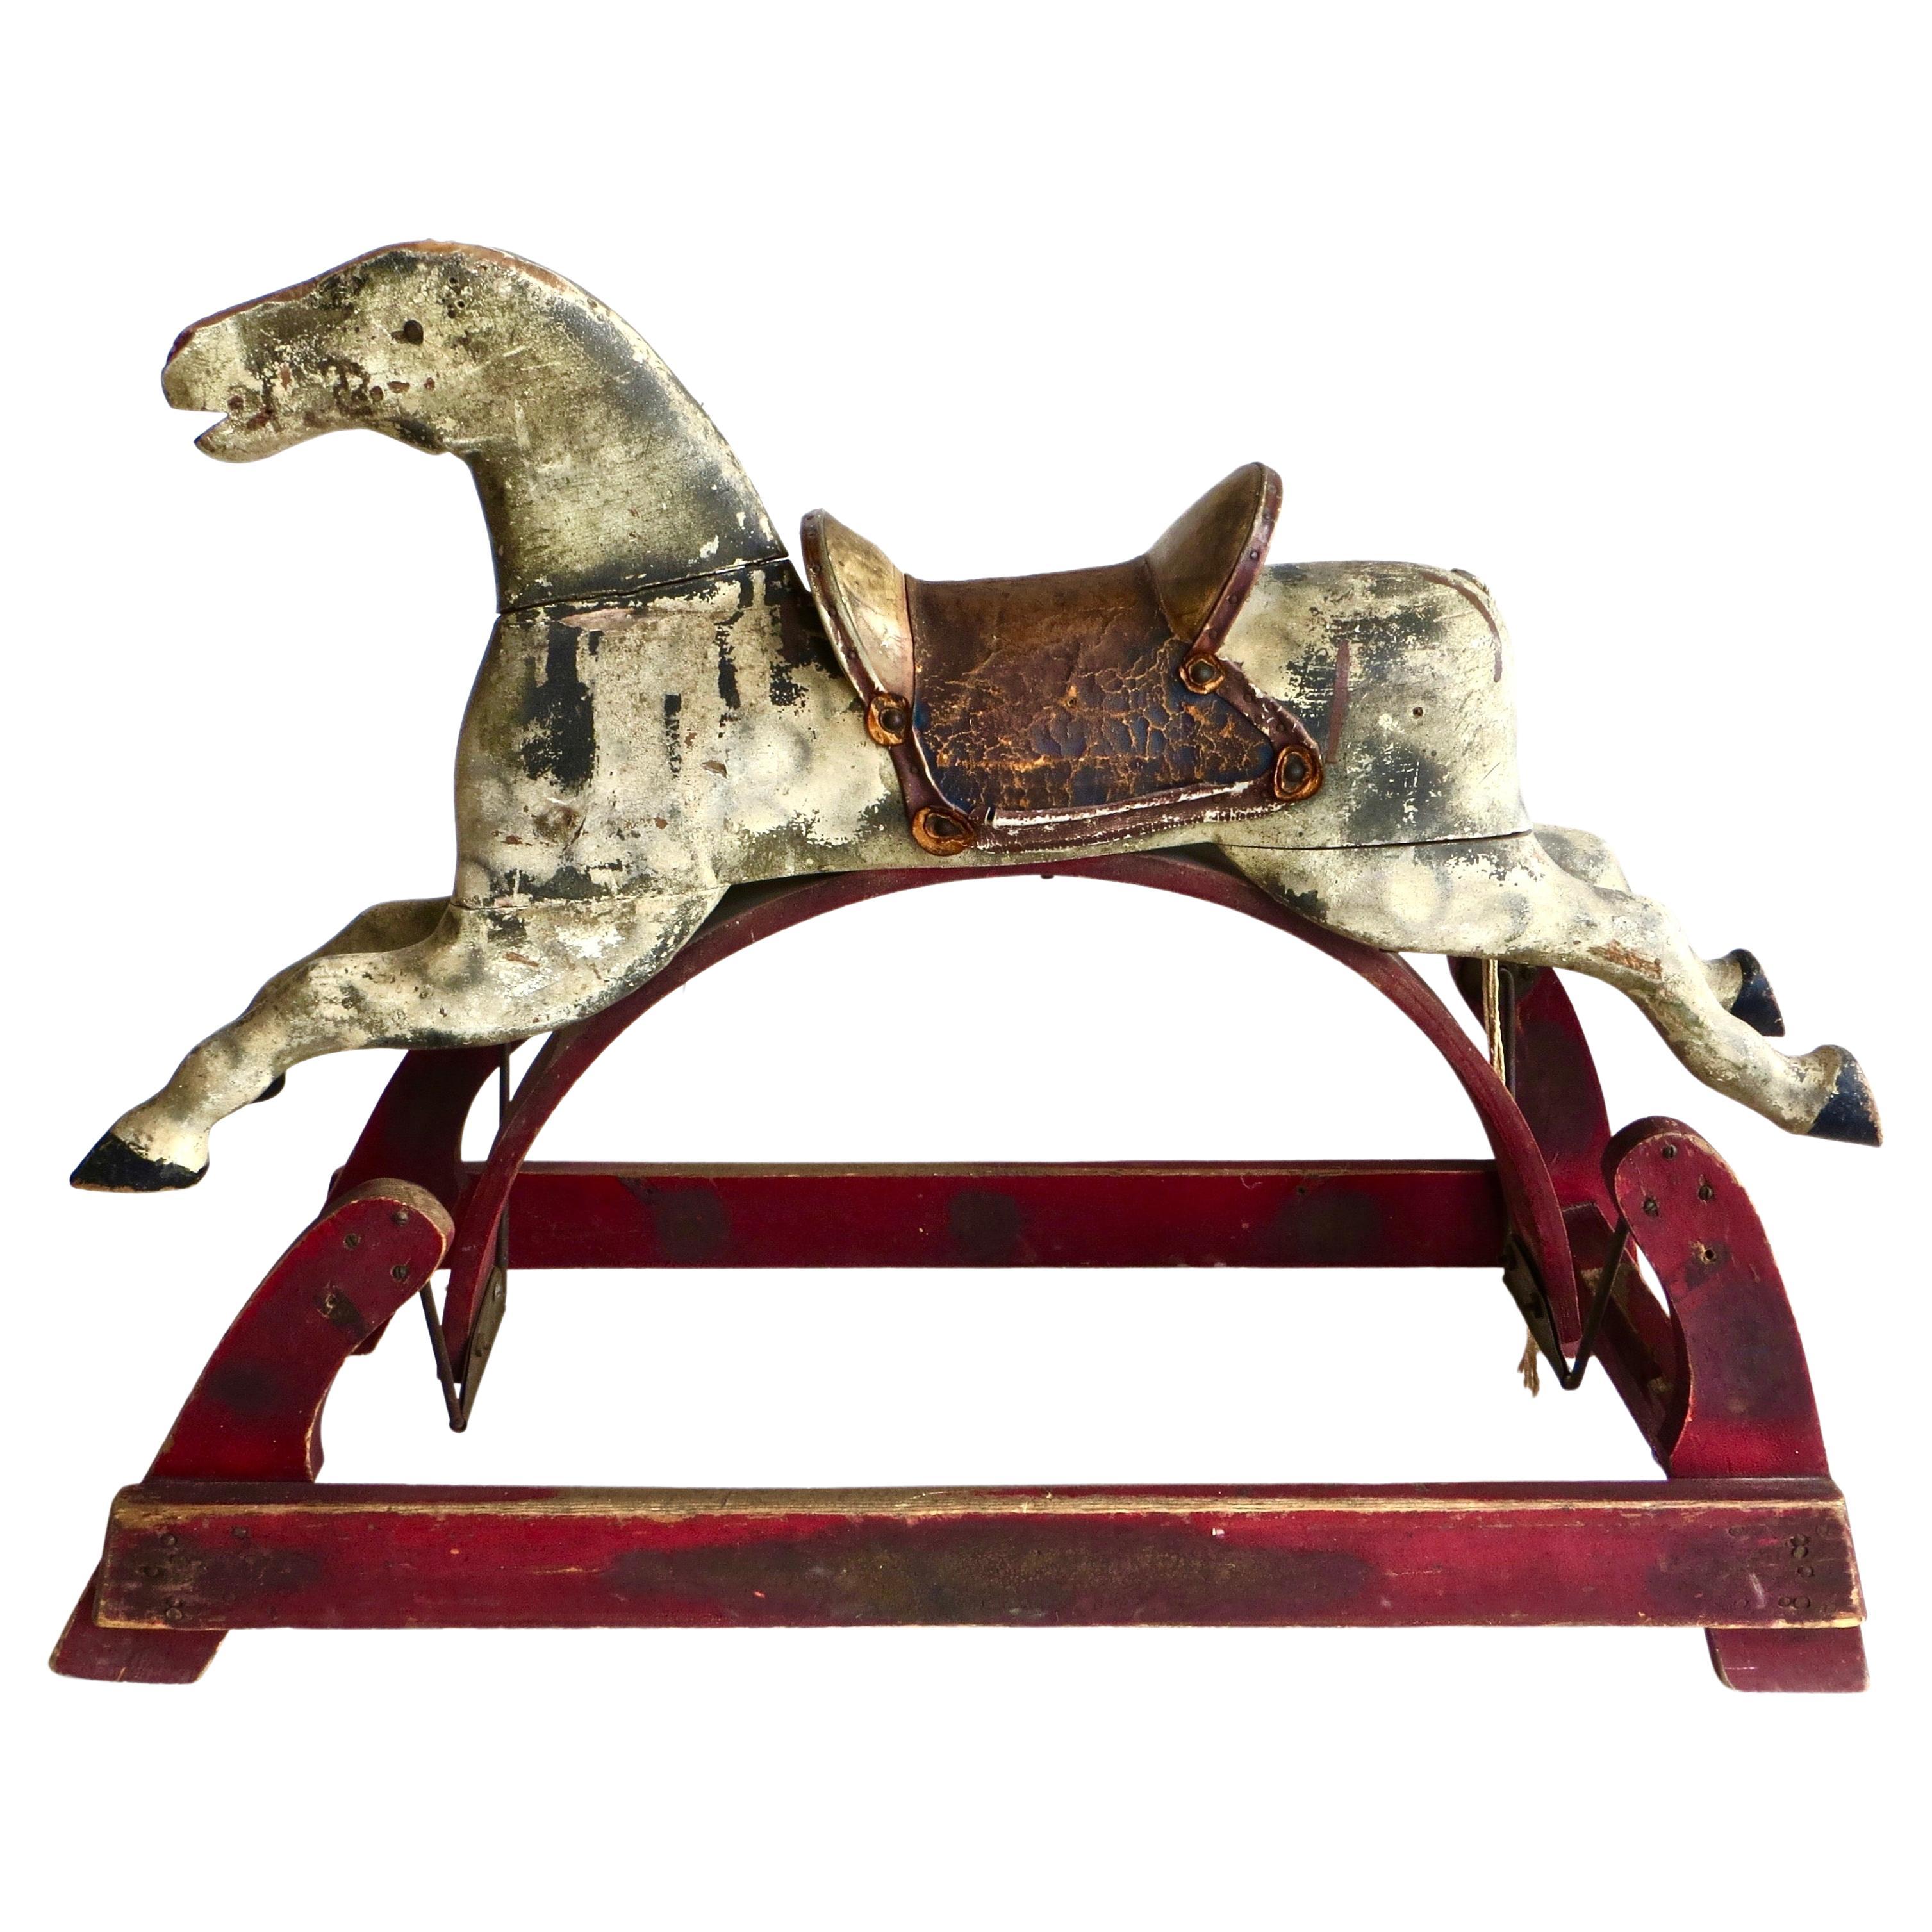 19th Century Child's Platform Rocking Horse "Glider". American. Circa 1875